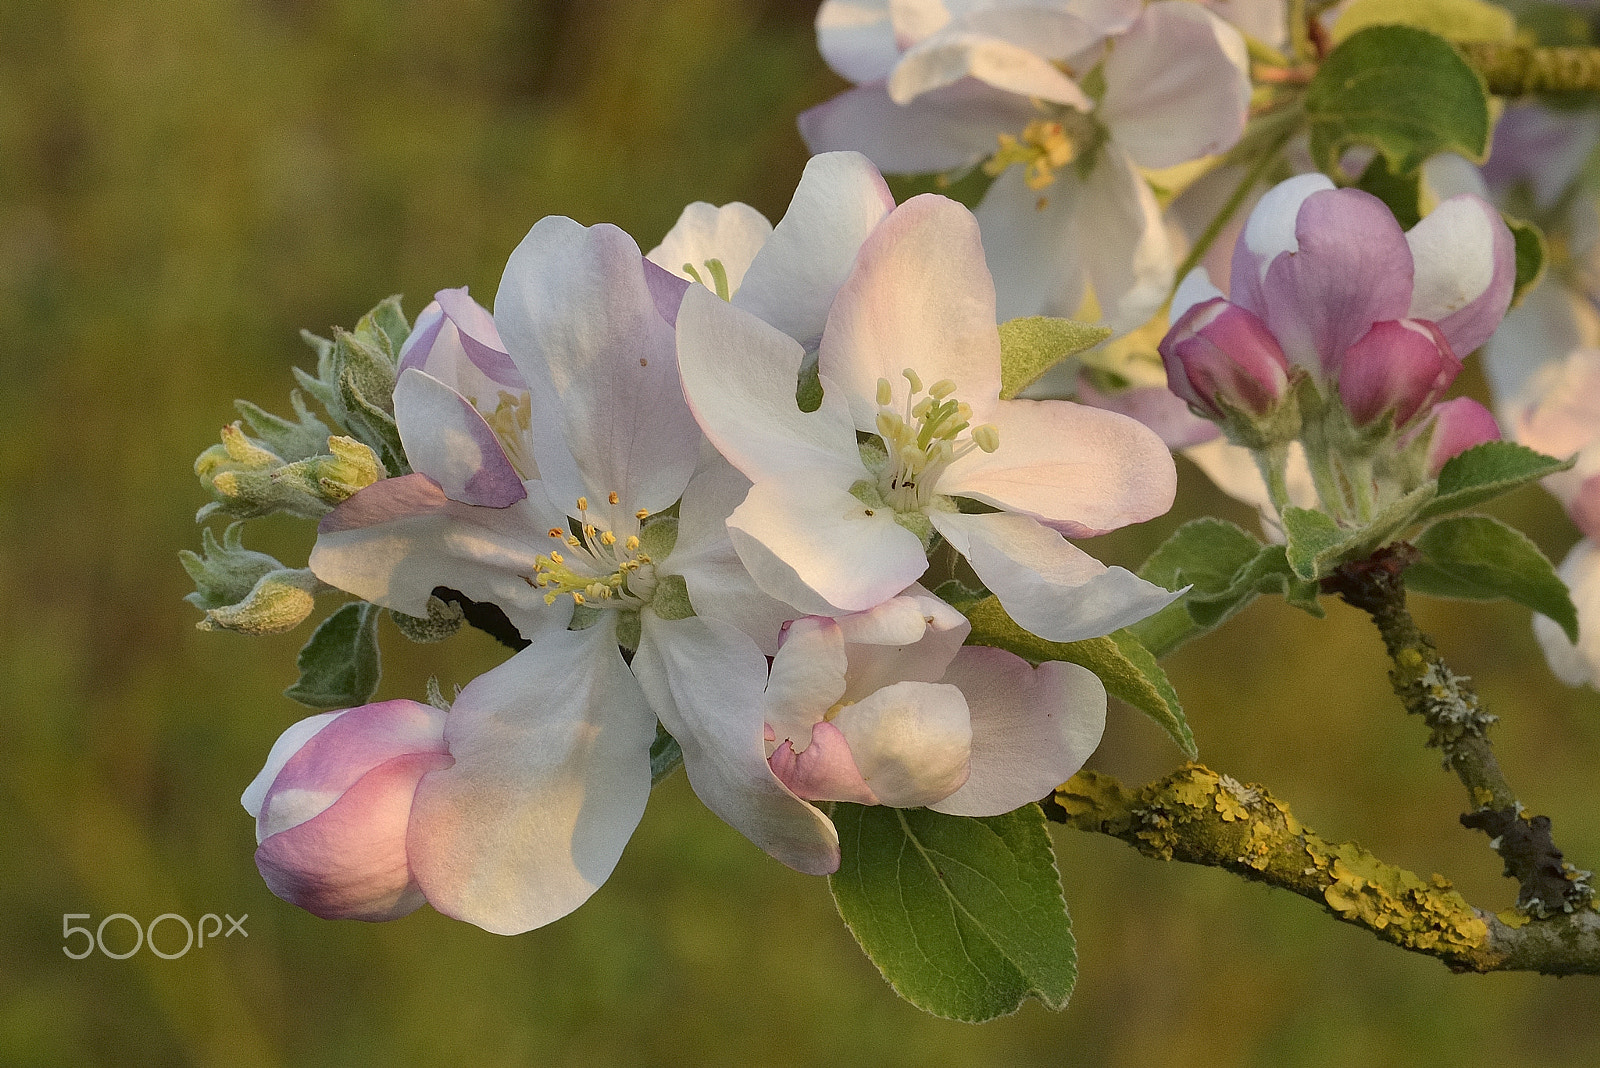 Nikon D800E sample photo. Apple blossoms / pommiers en fleurs photography